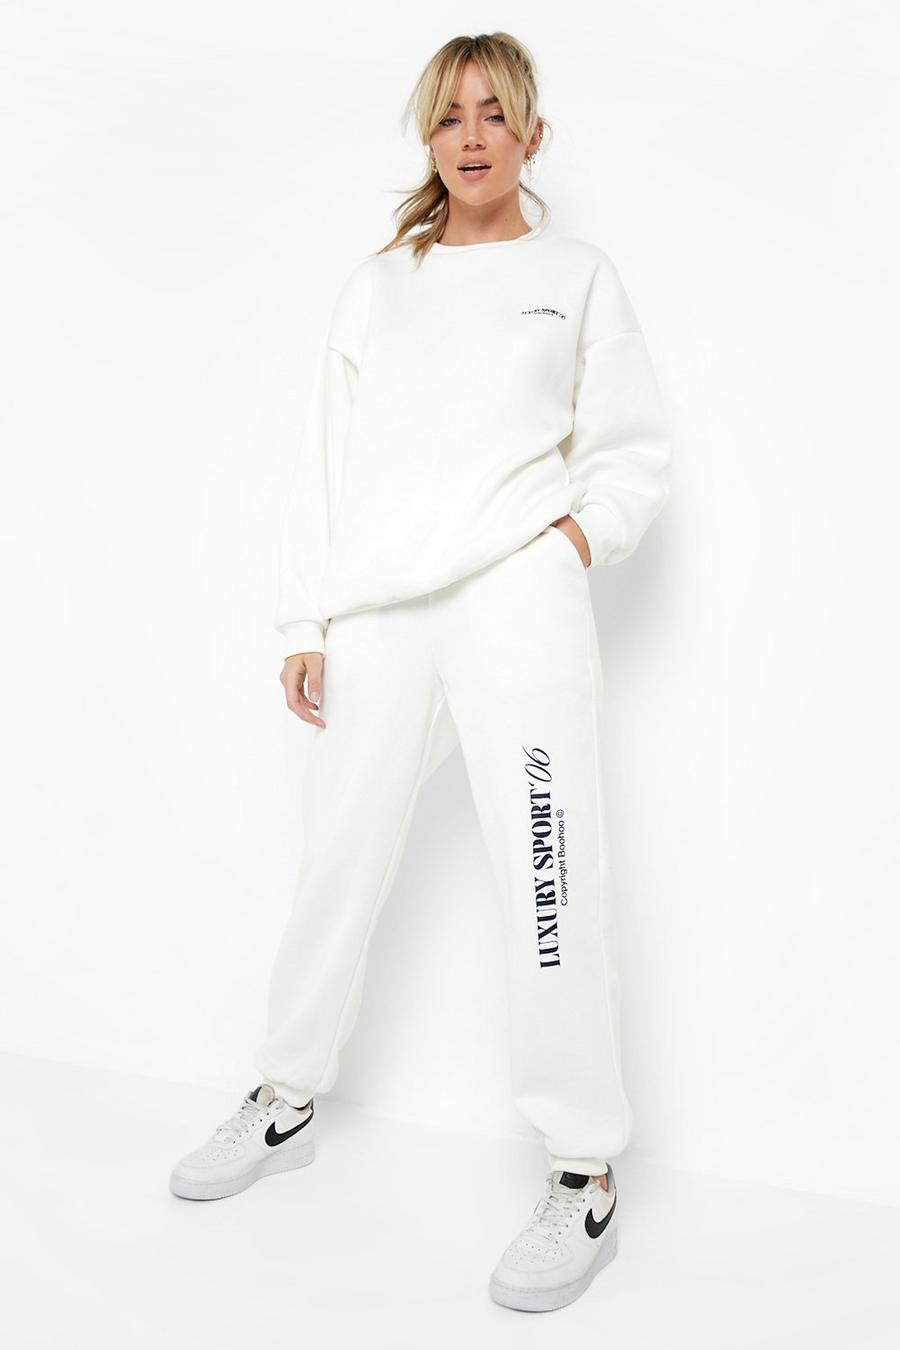 Survêtement femme (Ensemble sport Sweat à capuche et Pantalon) - Couleur  Blanc et Beige - Prêt à porter et accessoires